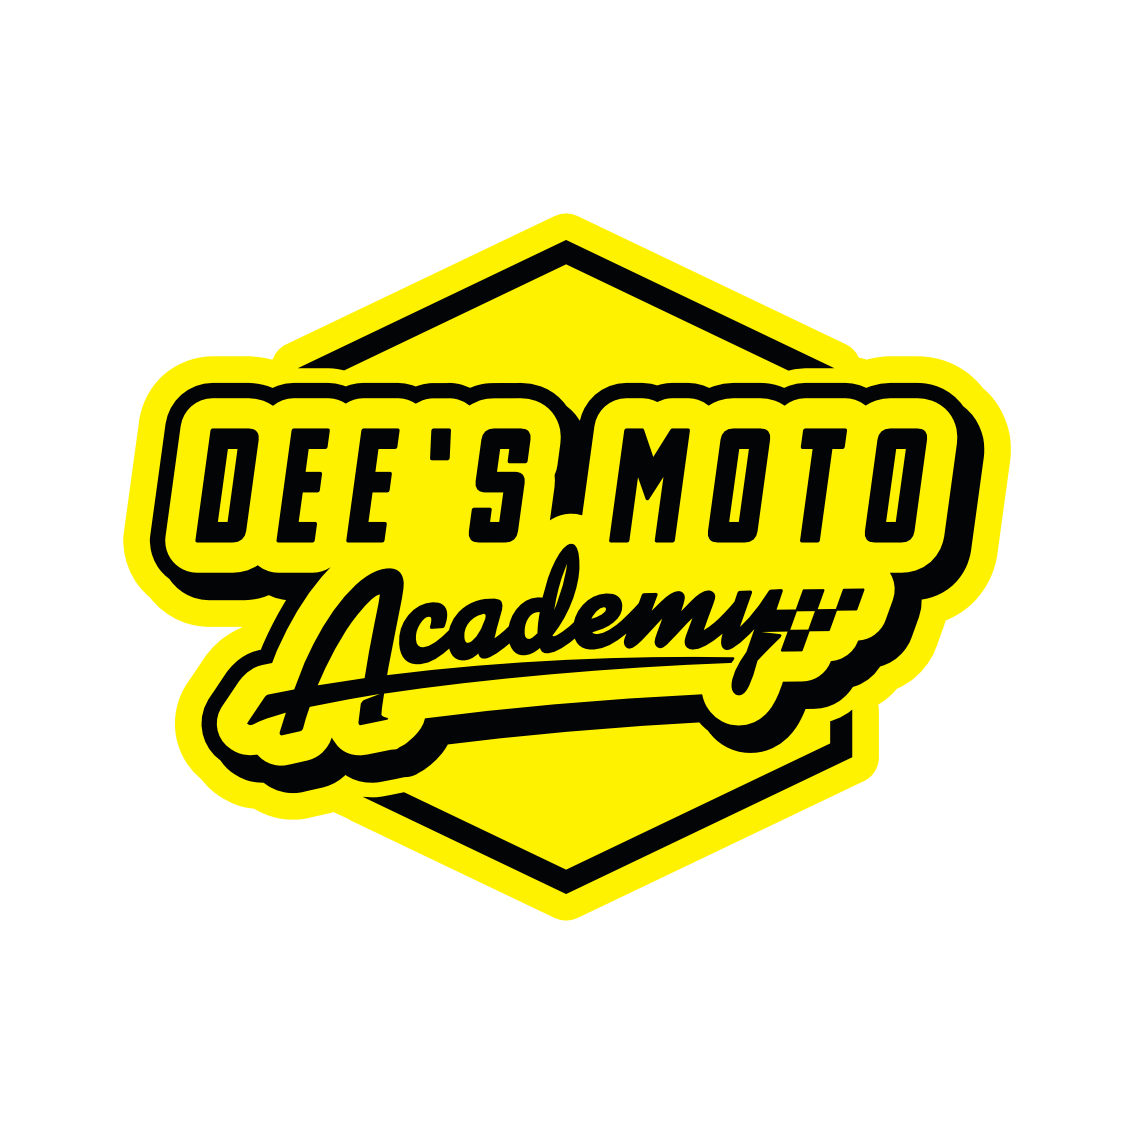 Dee's Moto Academy